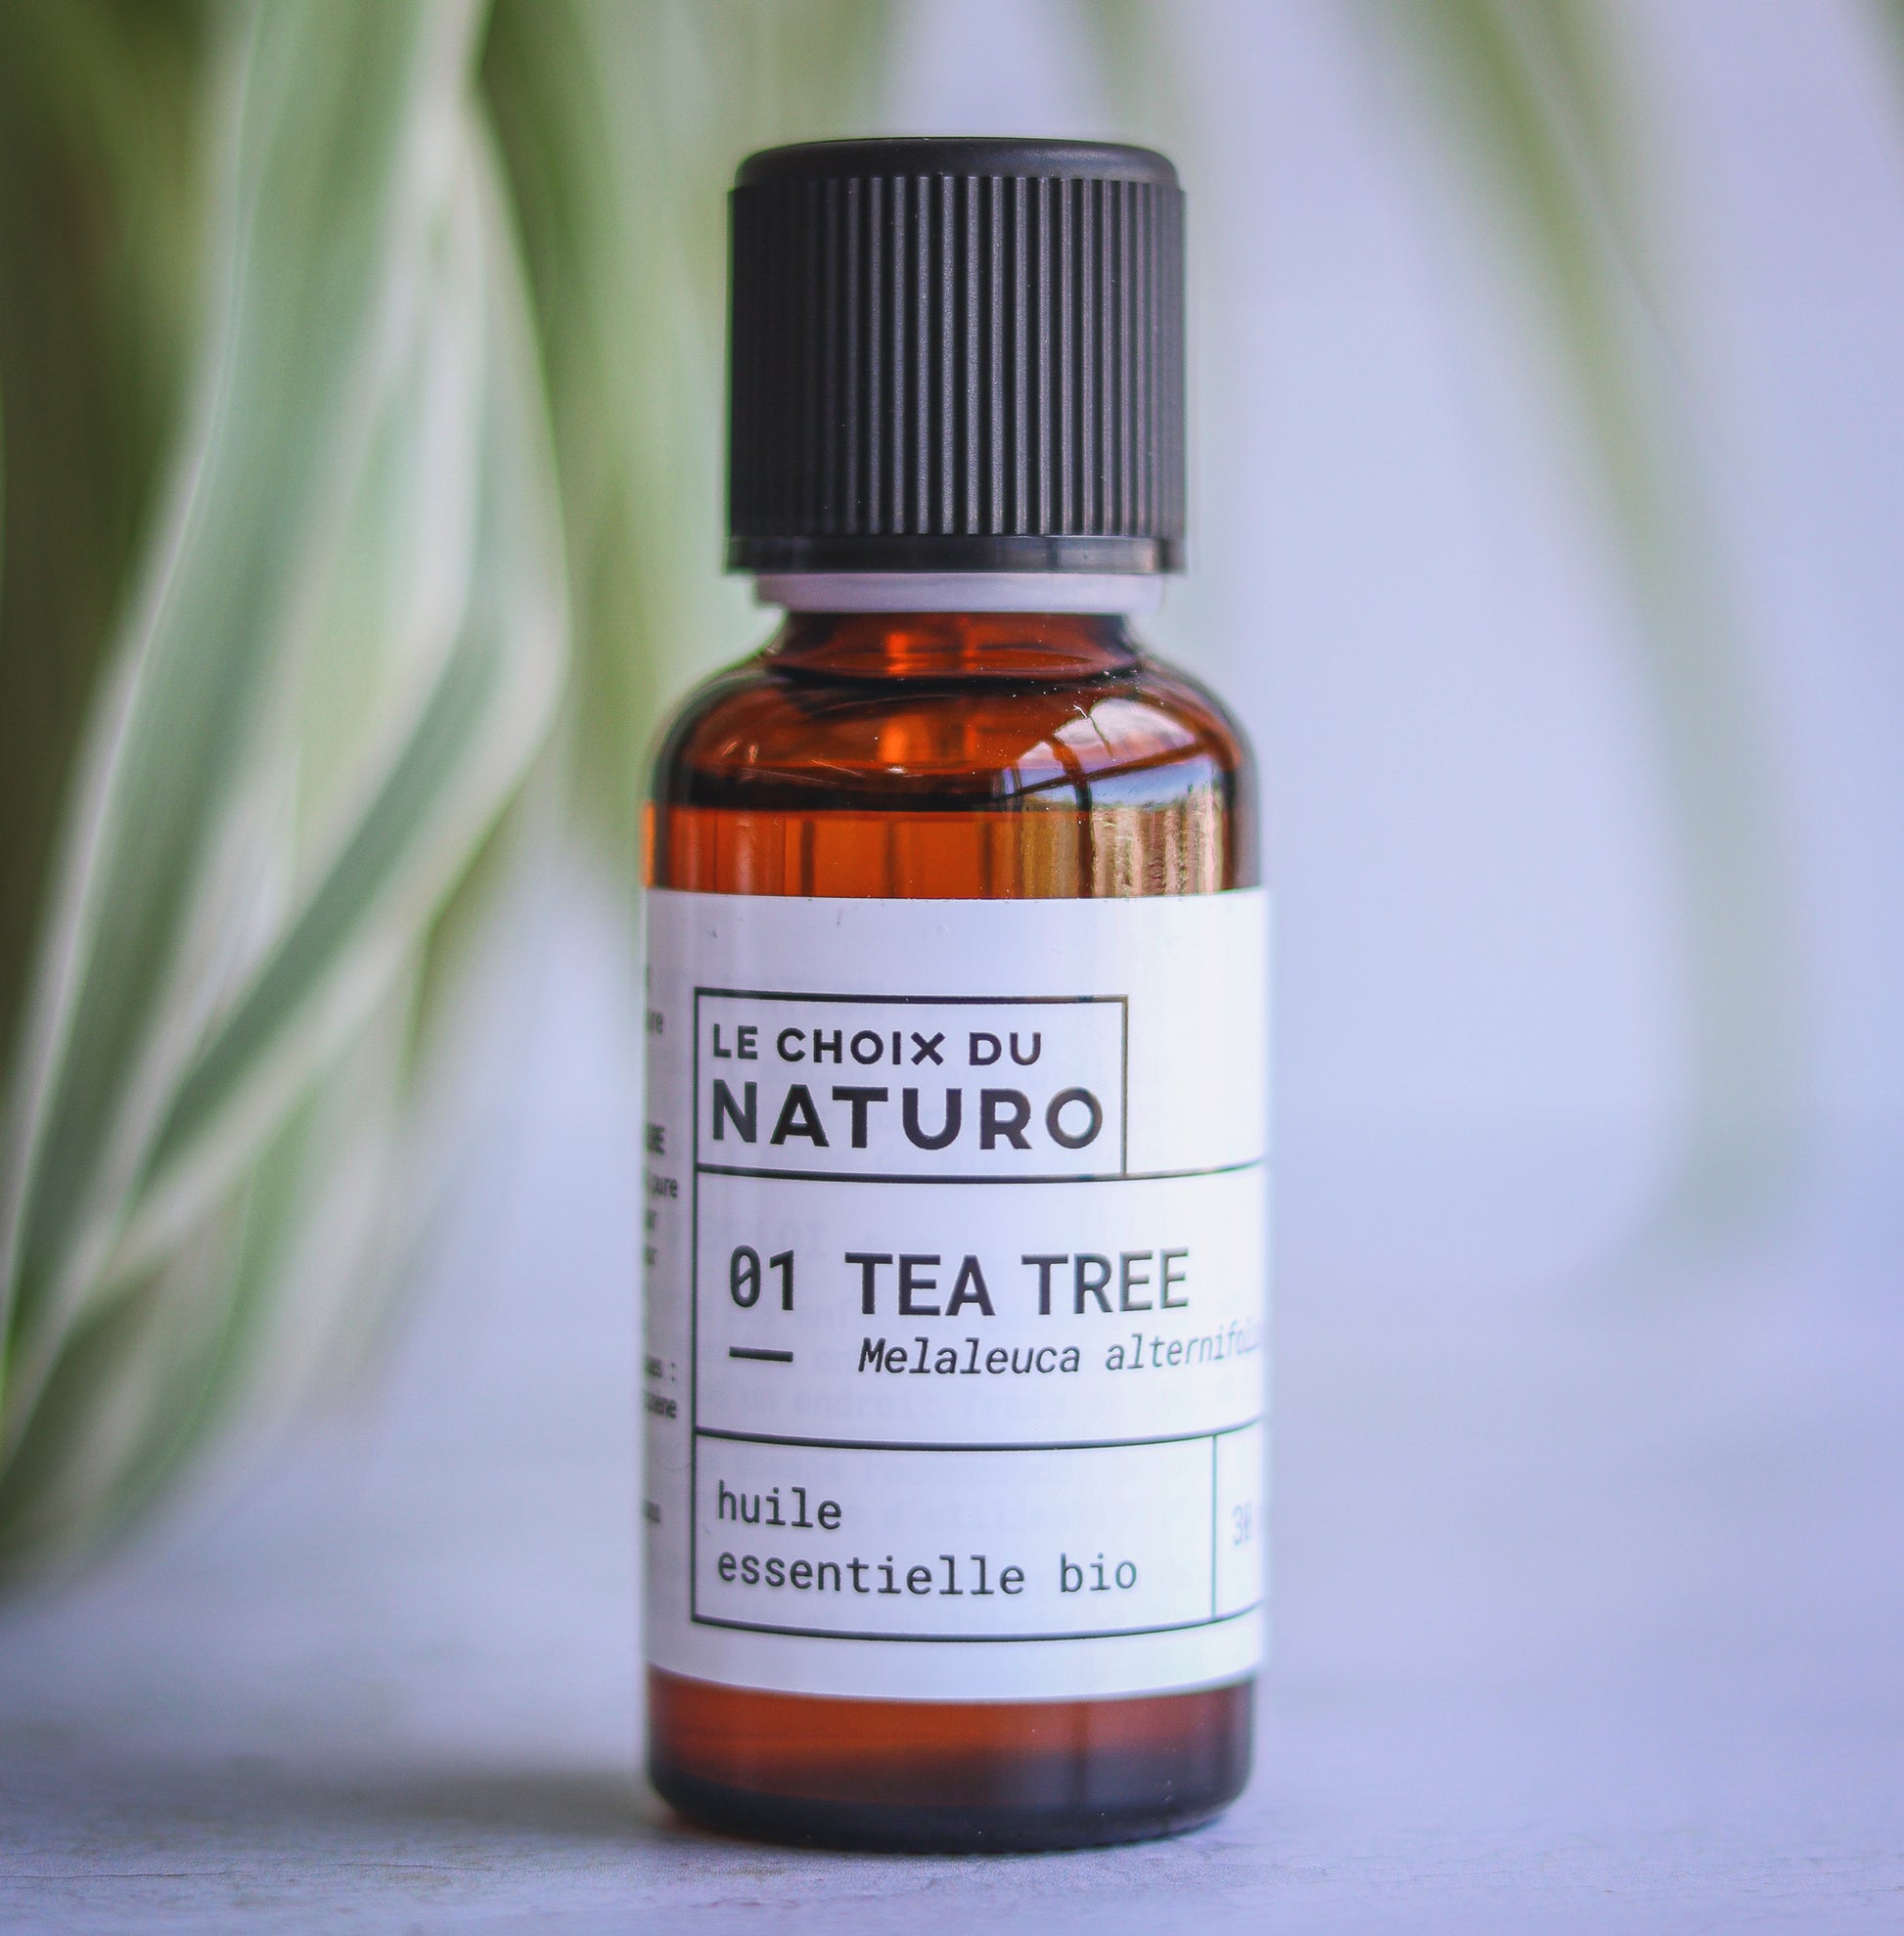 Huile essentielle bio de Tea-tree (melaleuca alternifolia)